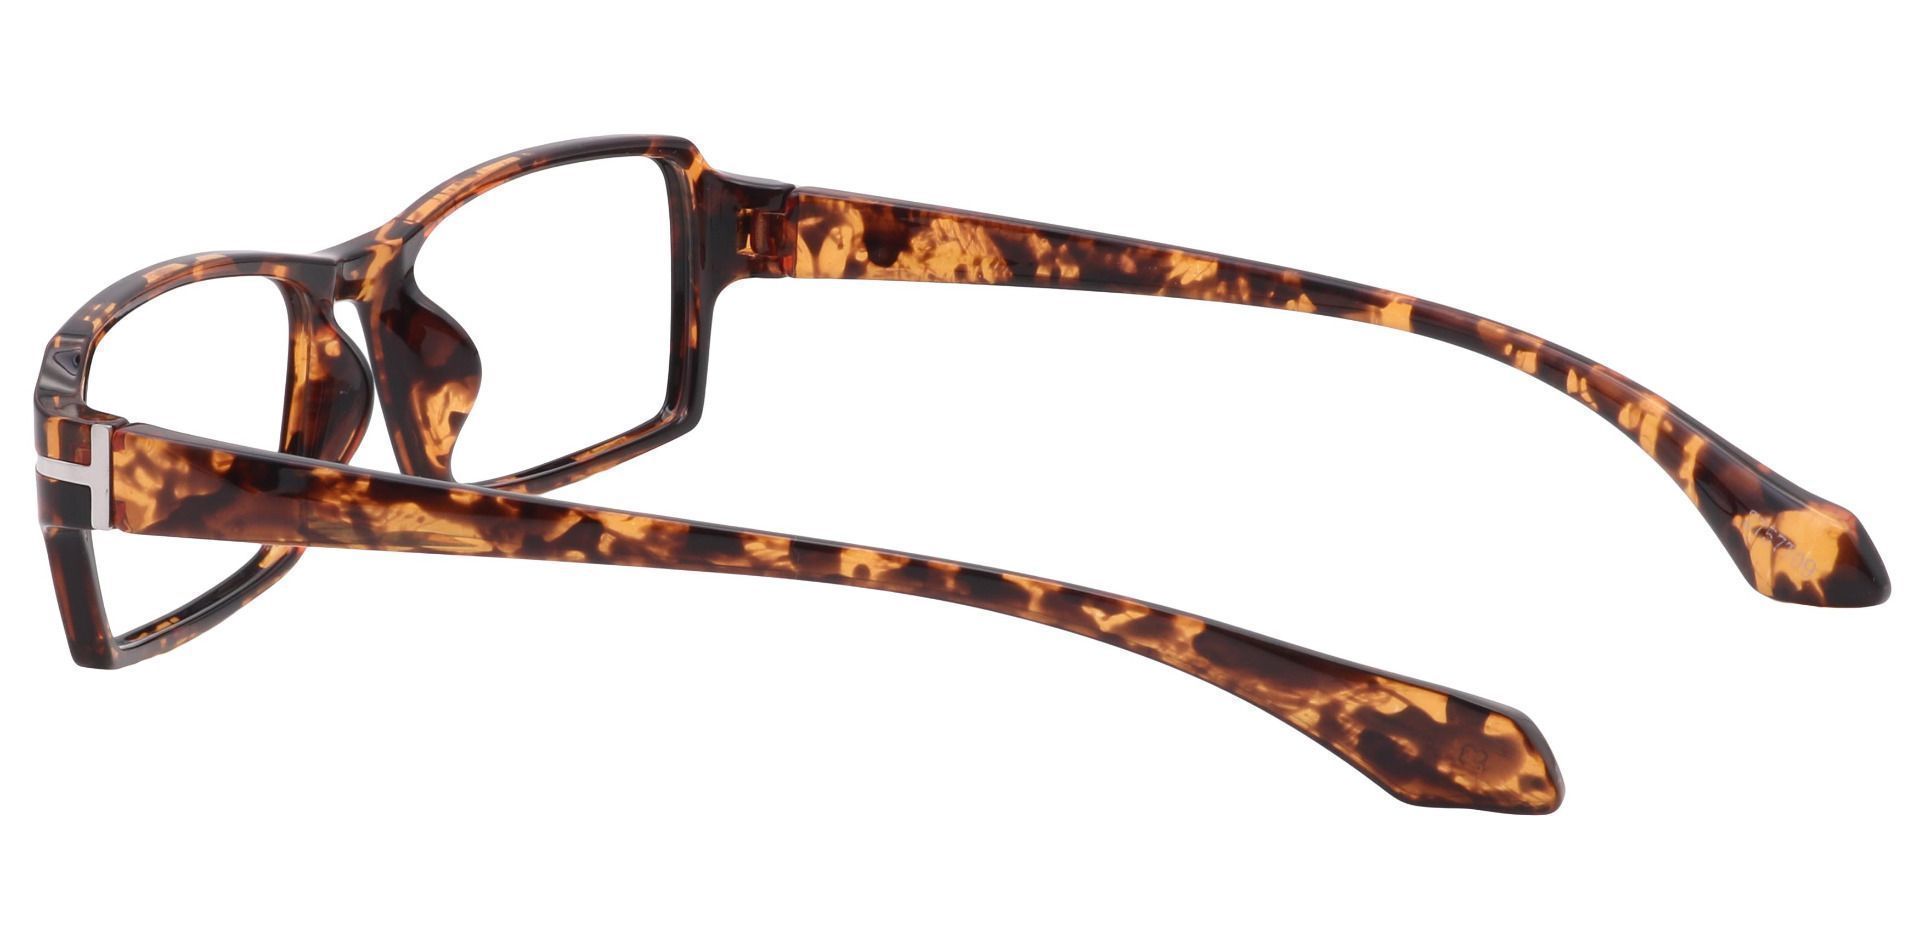 Kaiser Rectangle Eyeglasses Frame - Tortoise